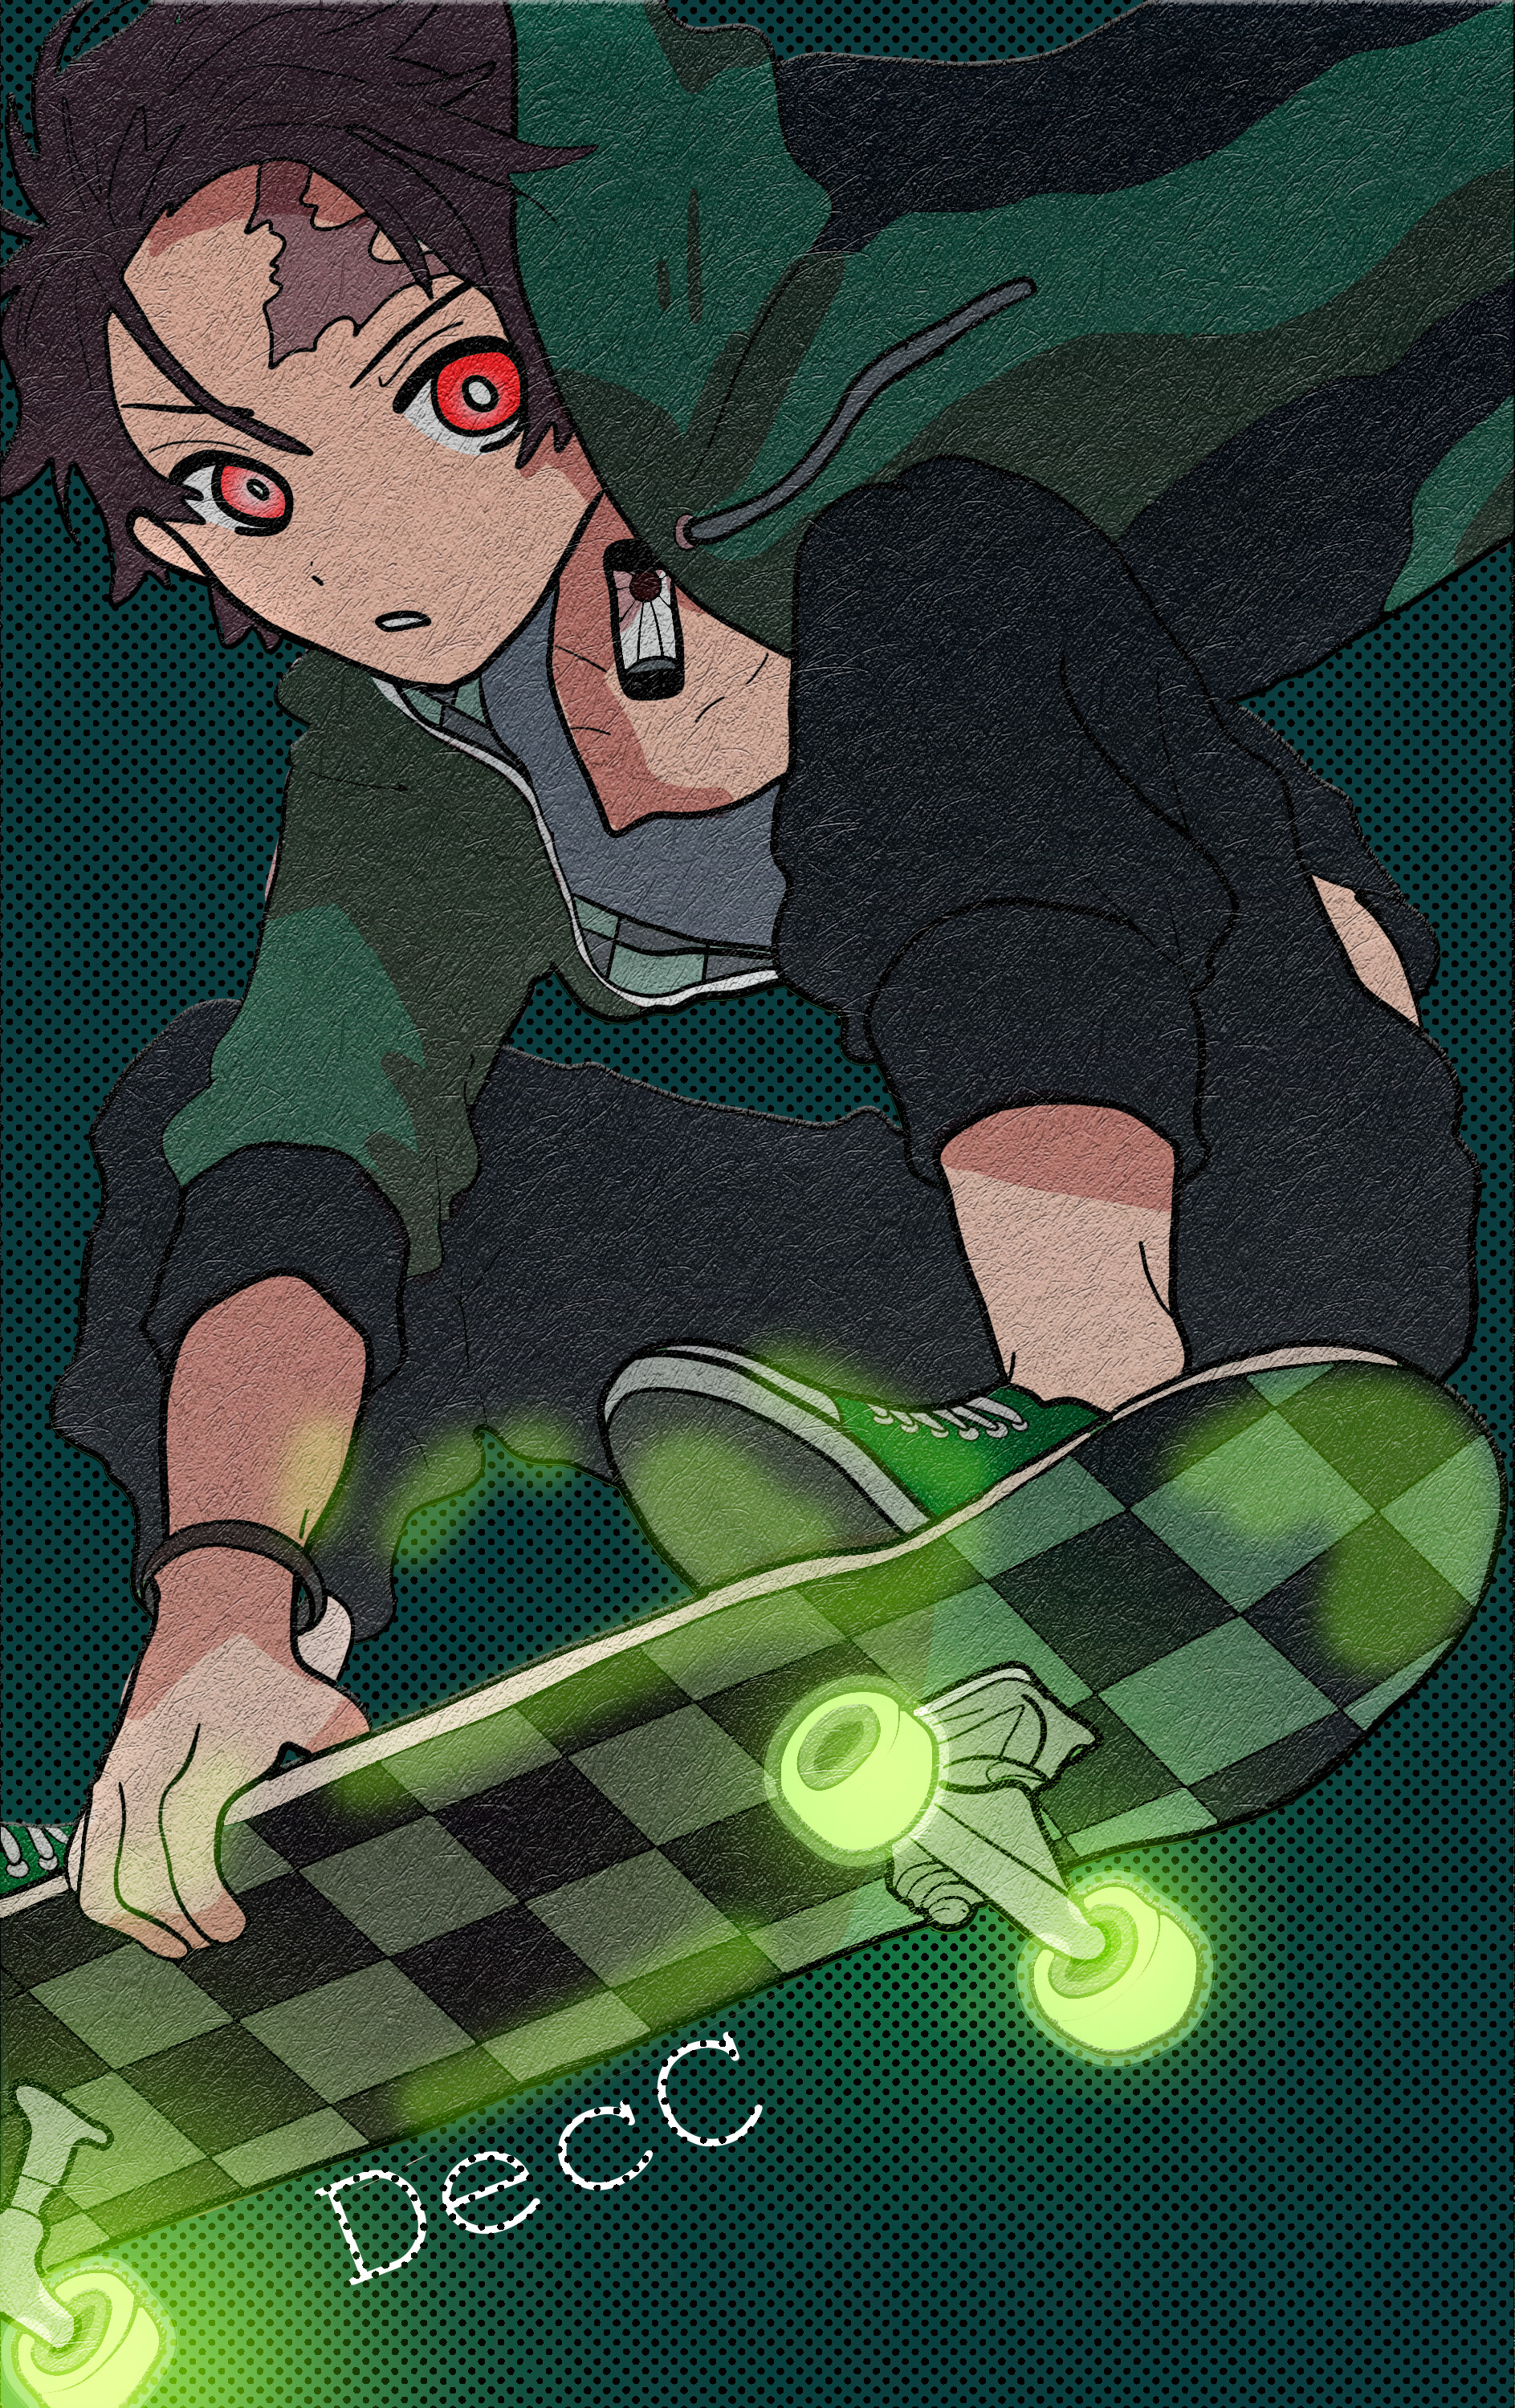 Skate completo Tanjiro Anime